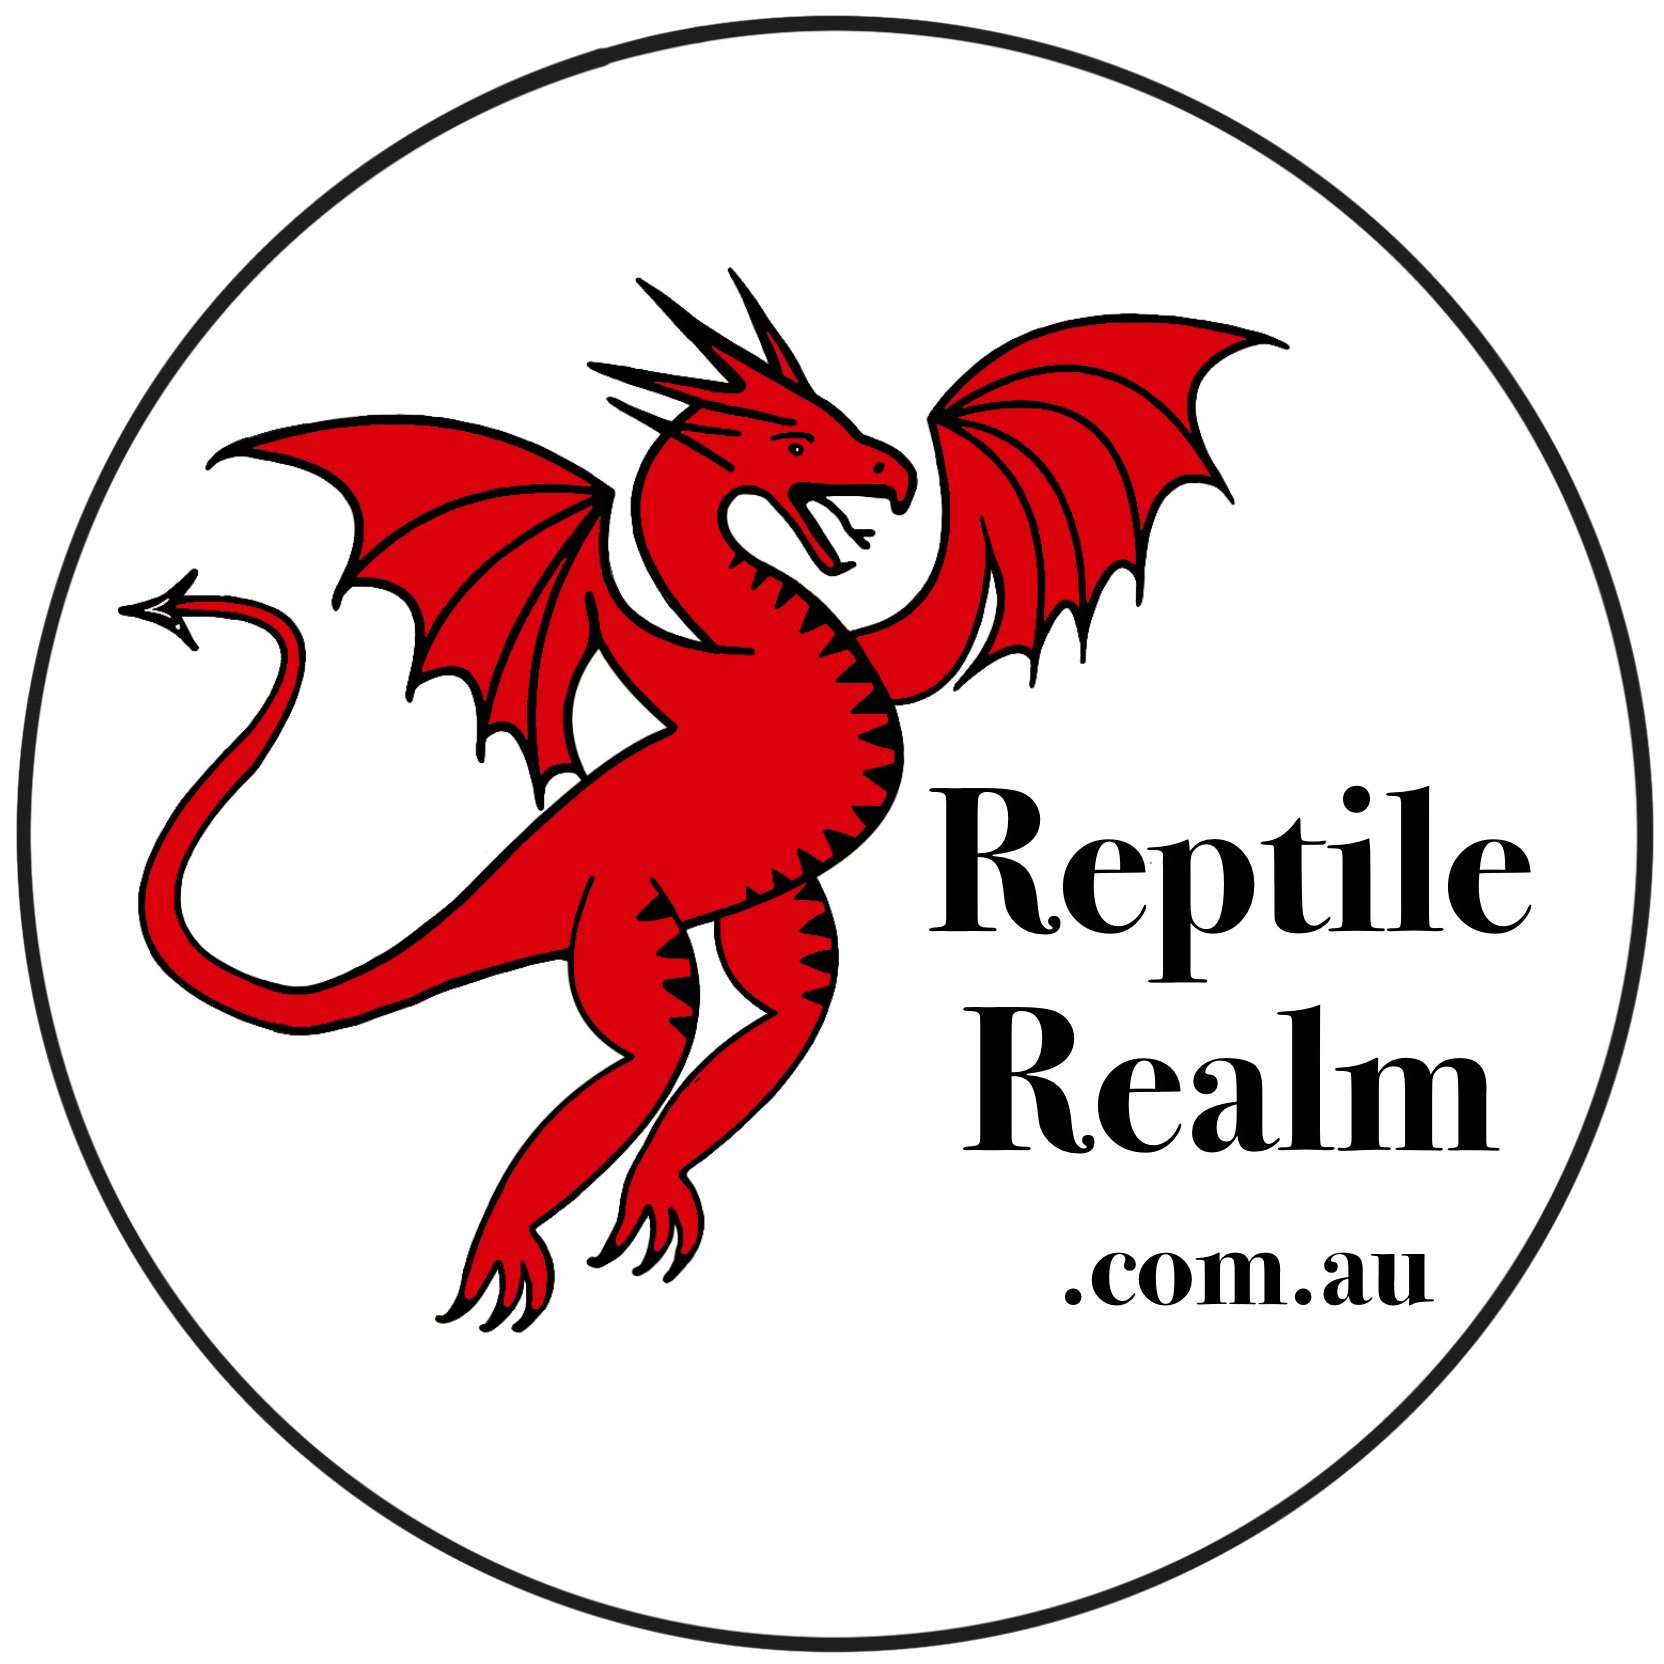 Reptile Realm